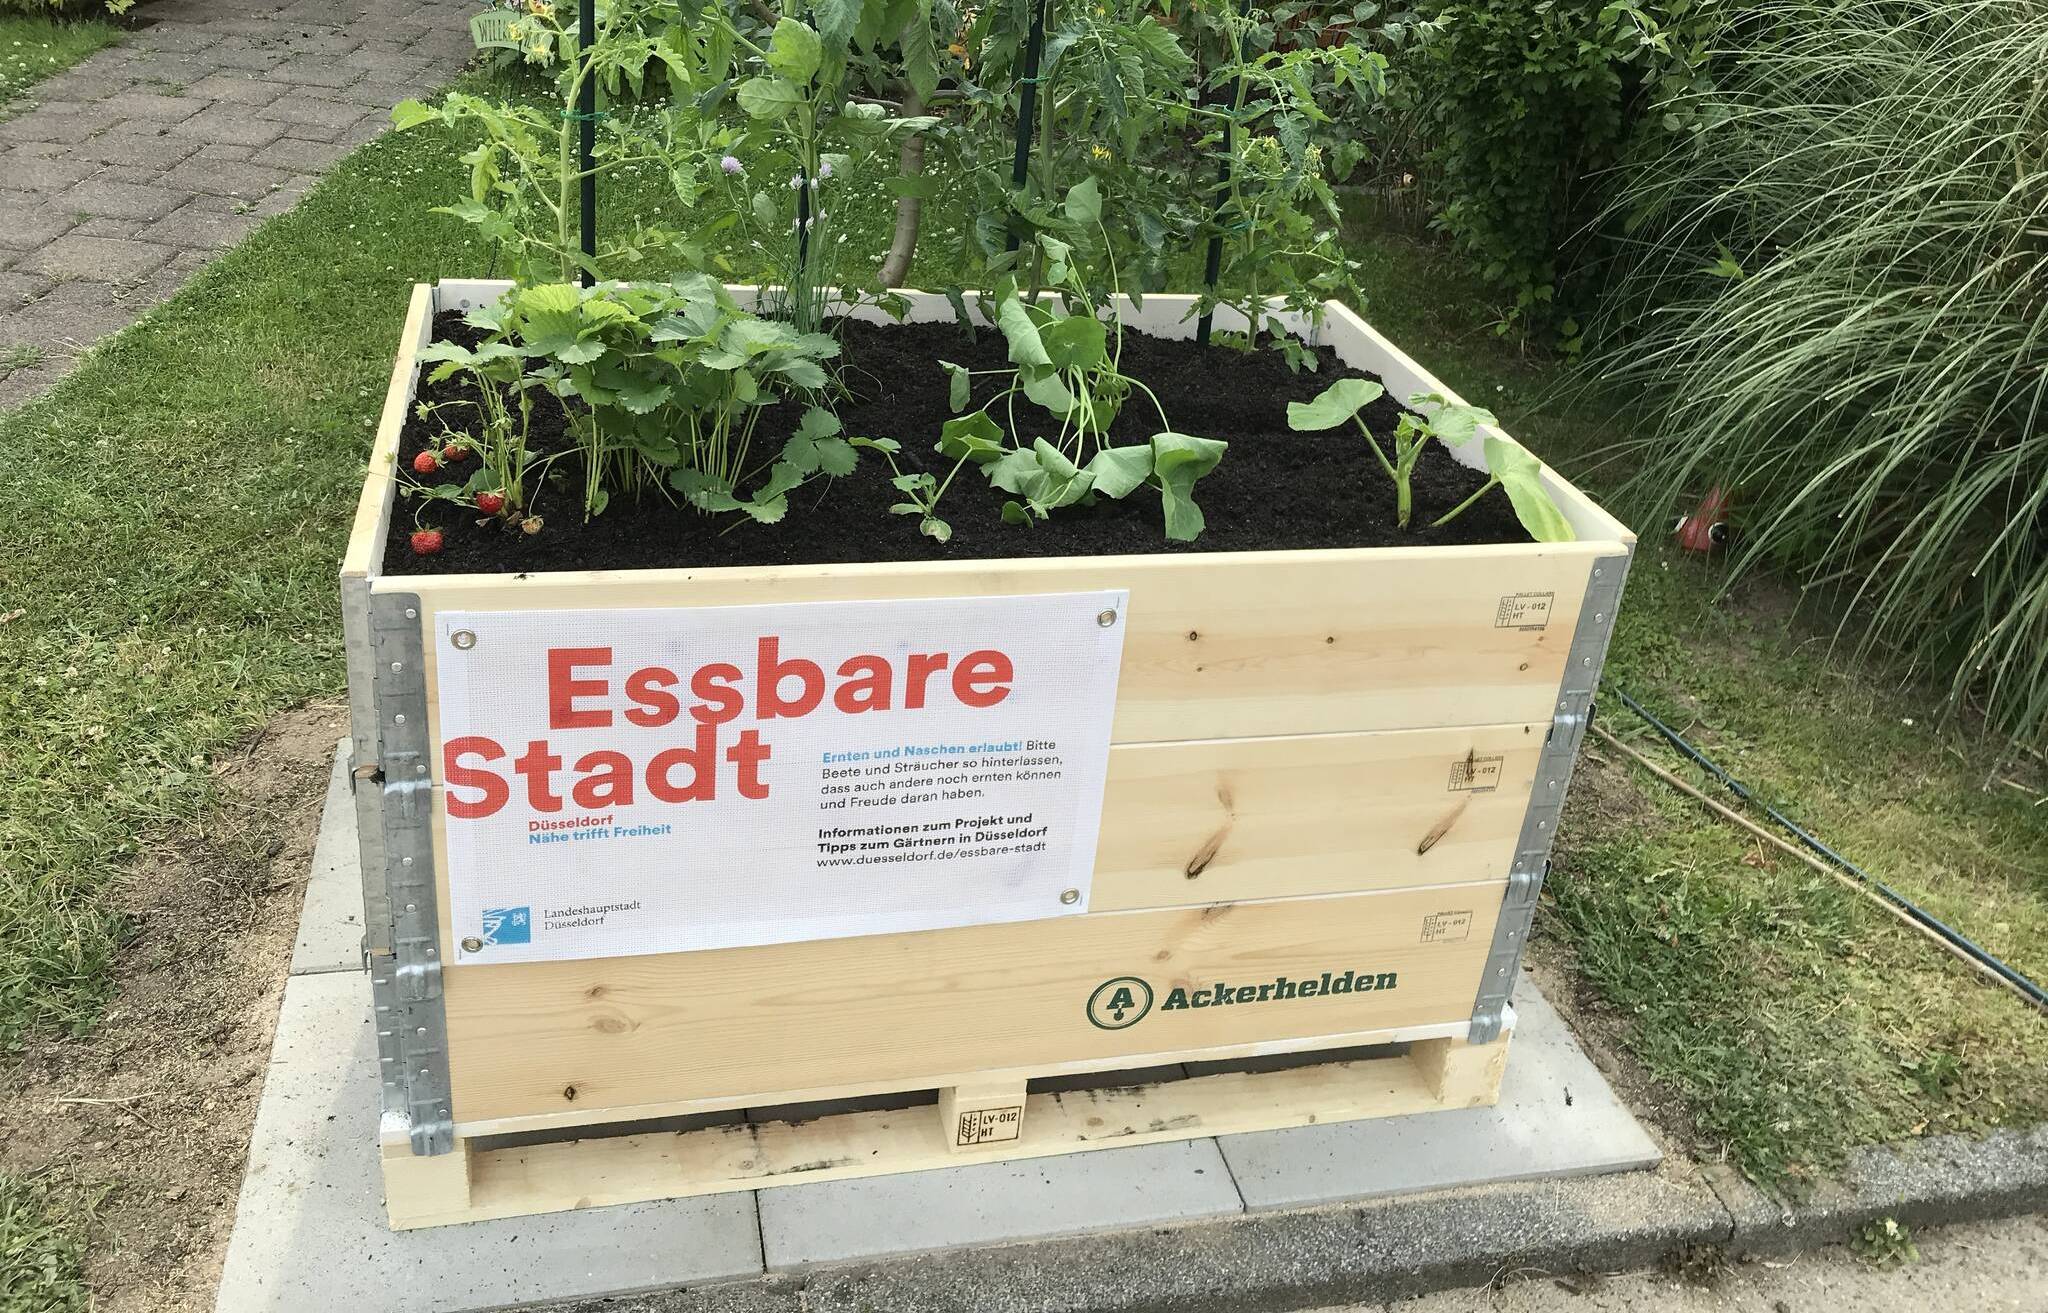  Im Zuge des Projektes "Essbare Stadt" besteht zum Beginn der Gartensaison im Frühling die Möglichkeit, ein "Bio-Hochbeet-Set" auf Bestellung anzufordern. Foto: Landeshauptstadt Düsseldorf, Umweltamt. 